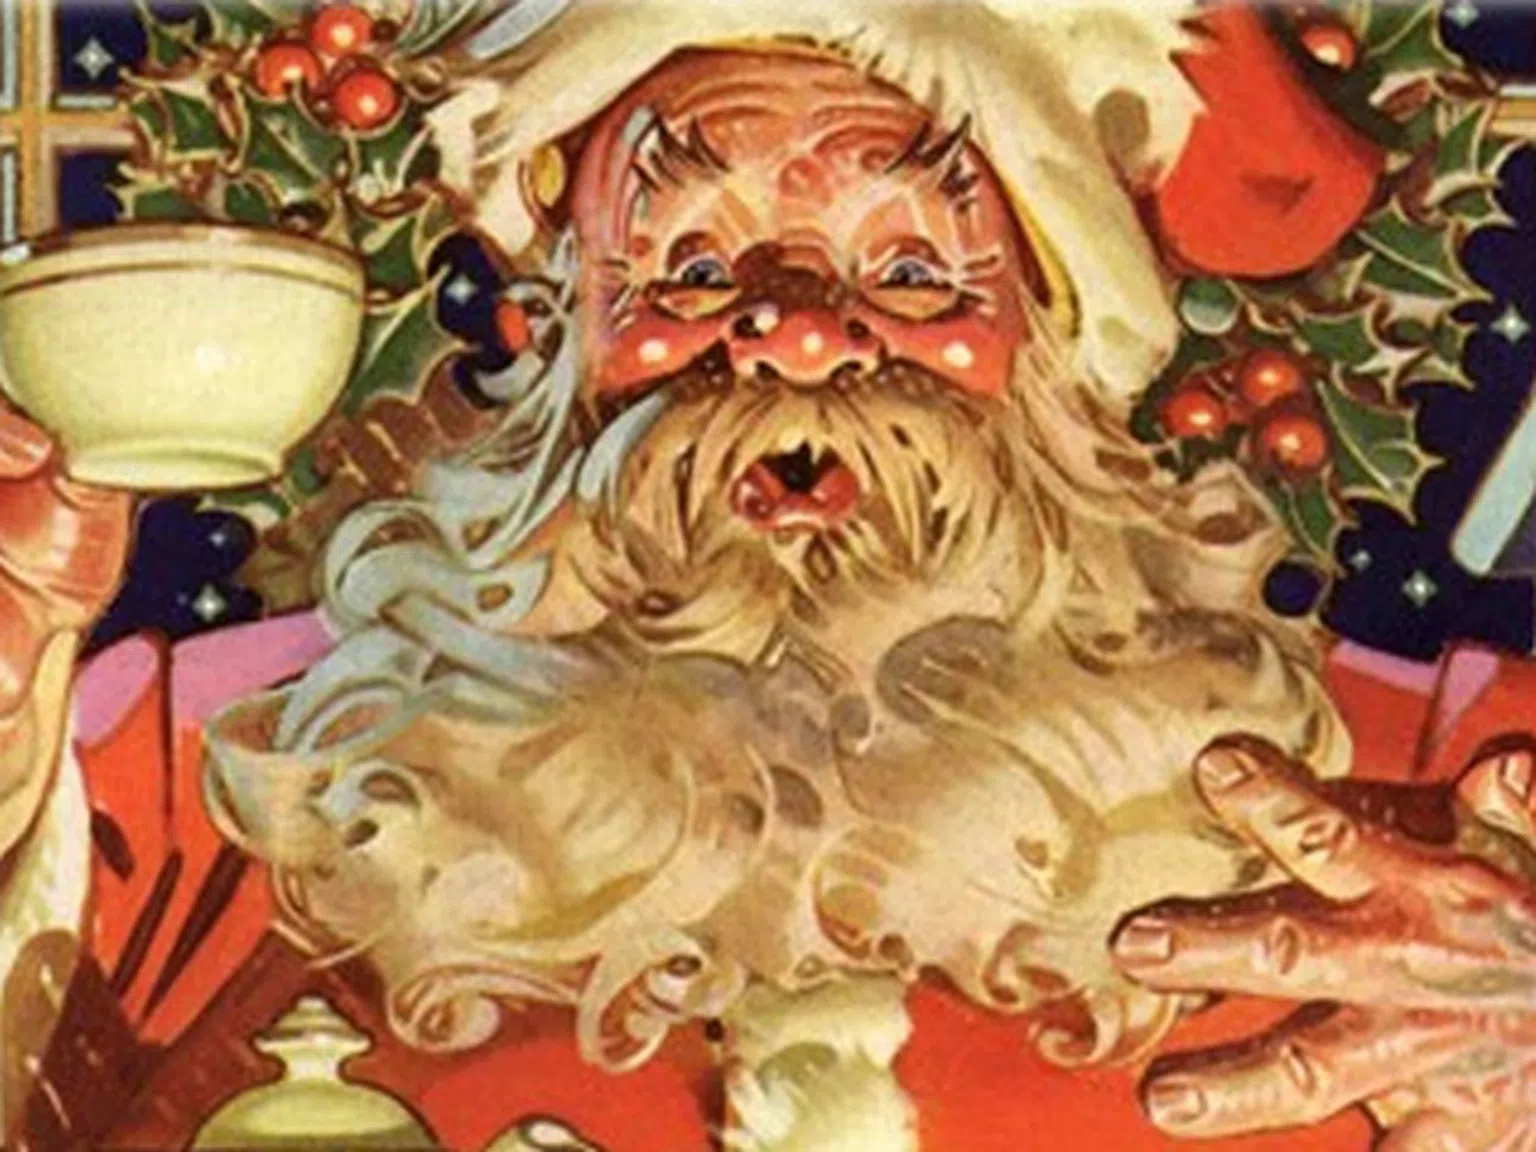 Дядо Коледа, Дядо Мраз, Санта Клаус, Свети Николай... Кой е той?